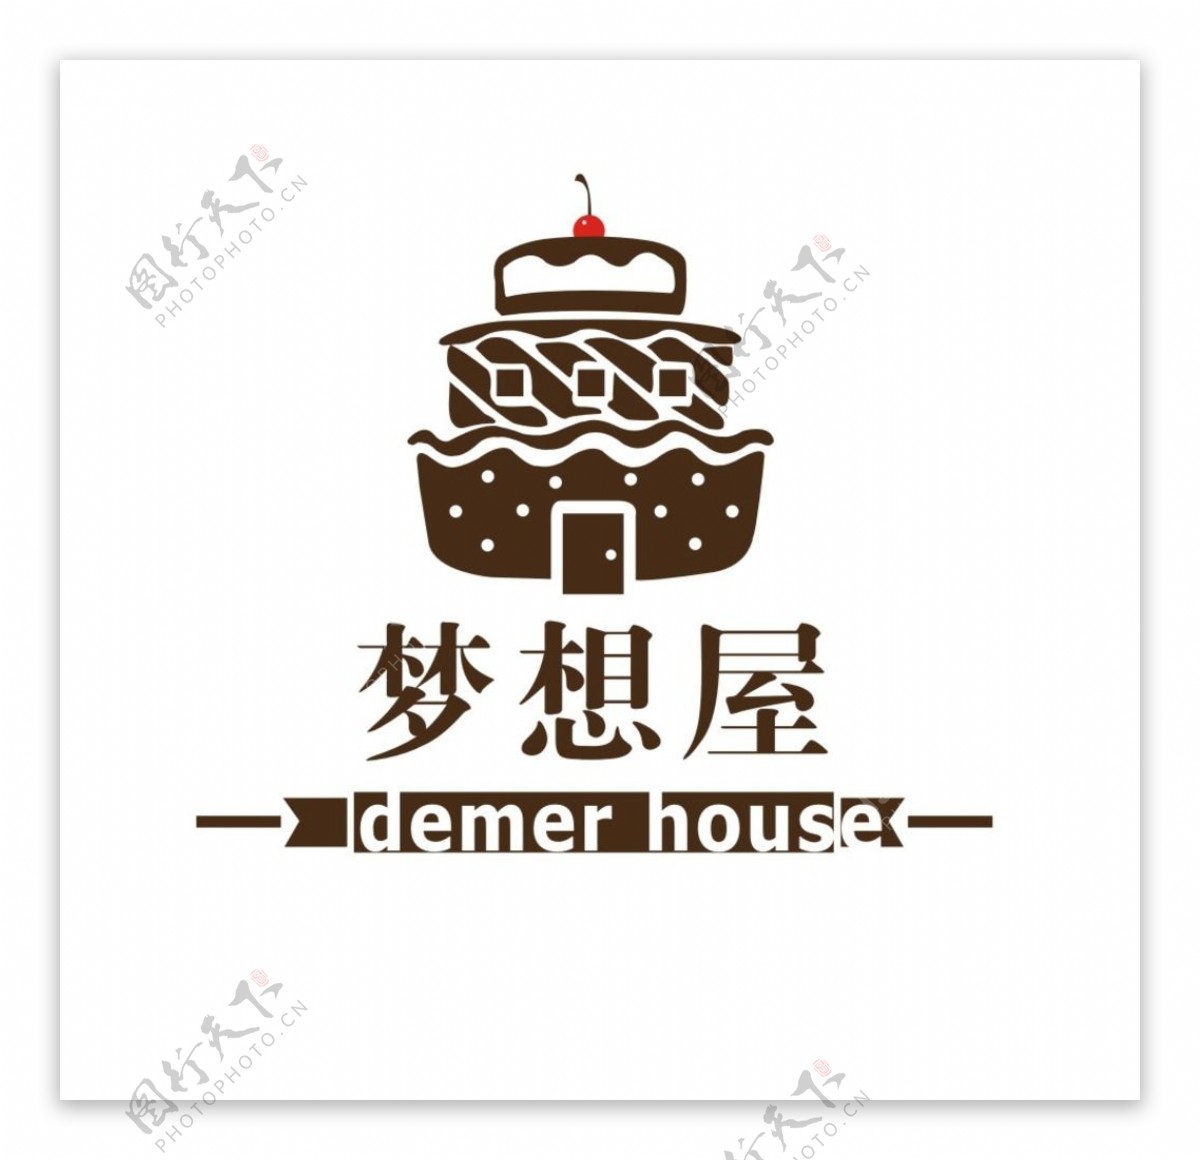 梦想屋蛋糕店logo图片